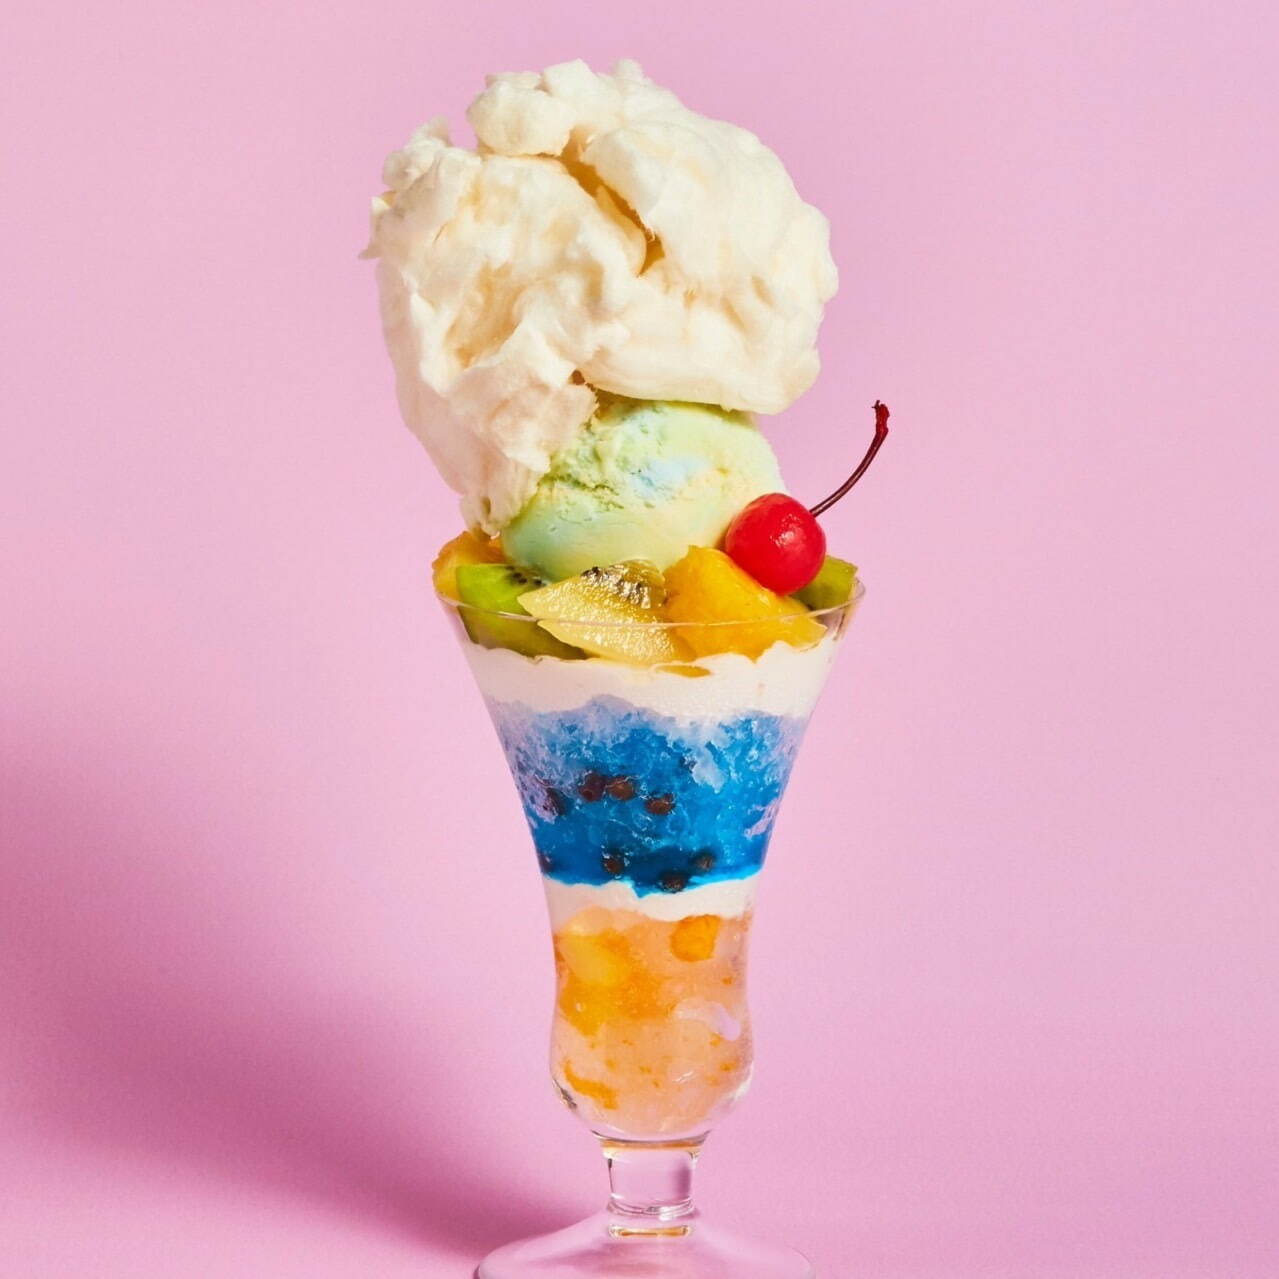 ららぽーと富士見店限定「わたあめとクリームソーダアイスのパフェ氷」1,320円